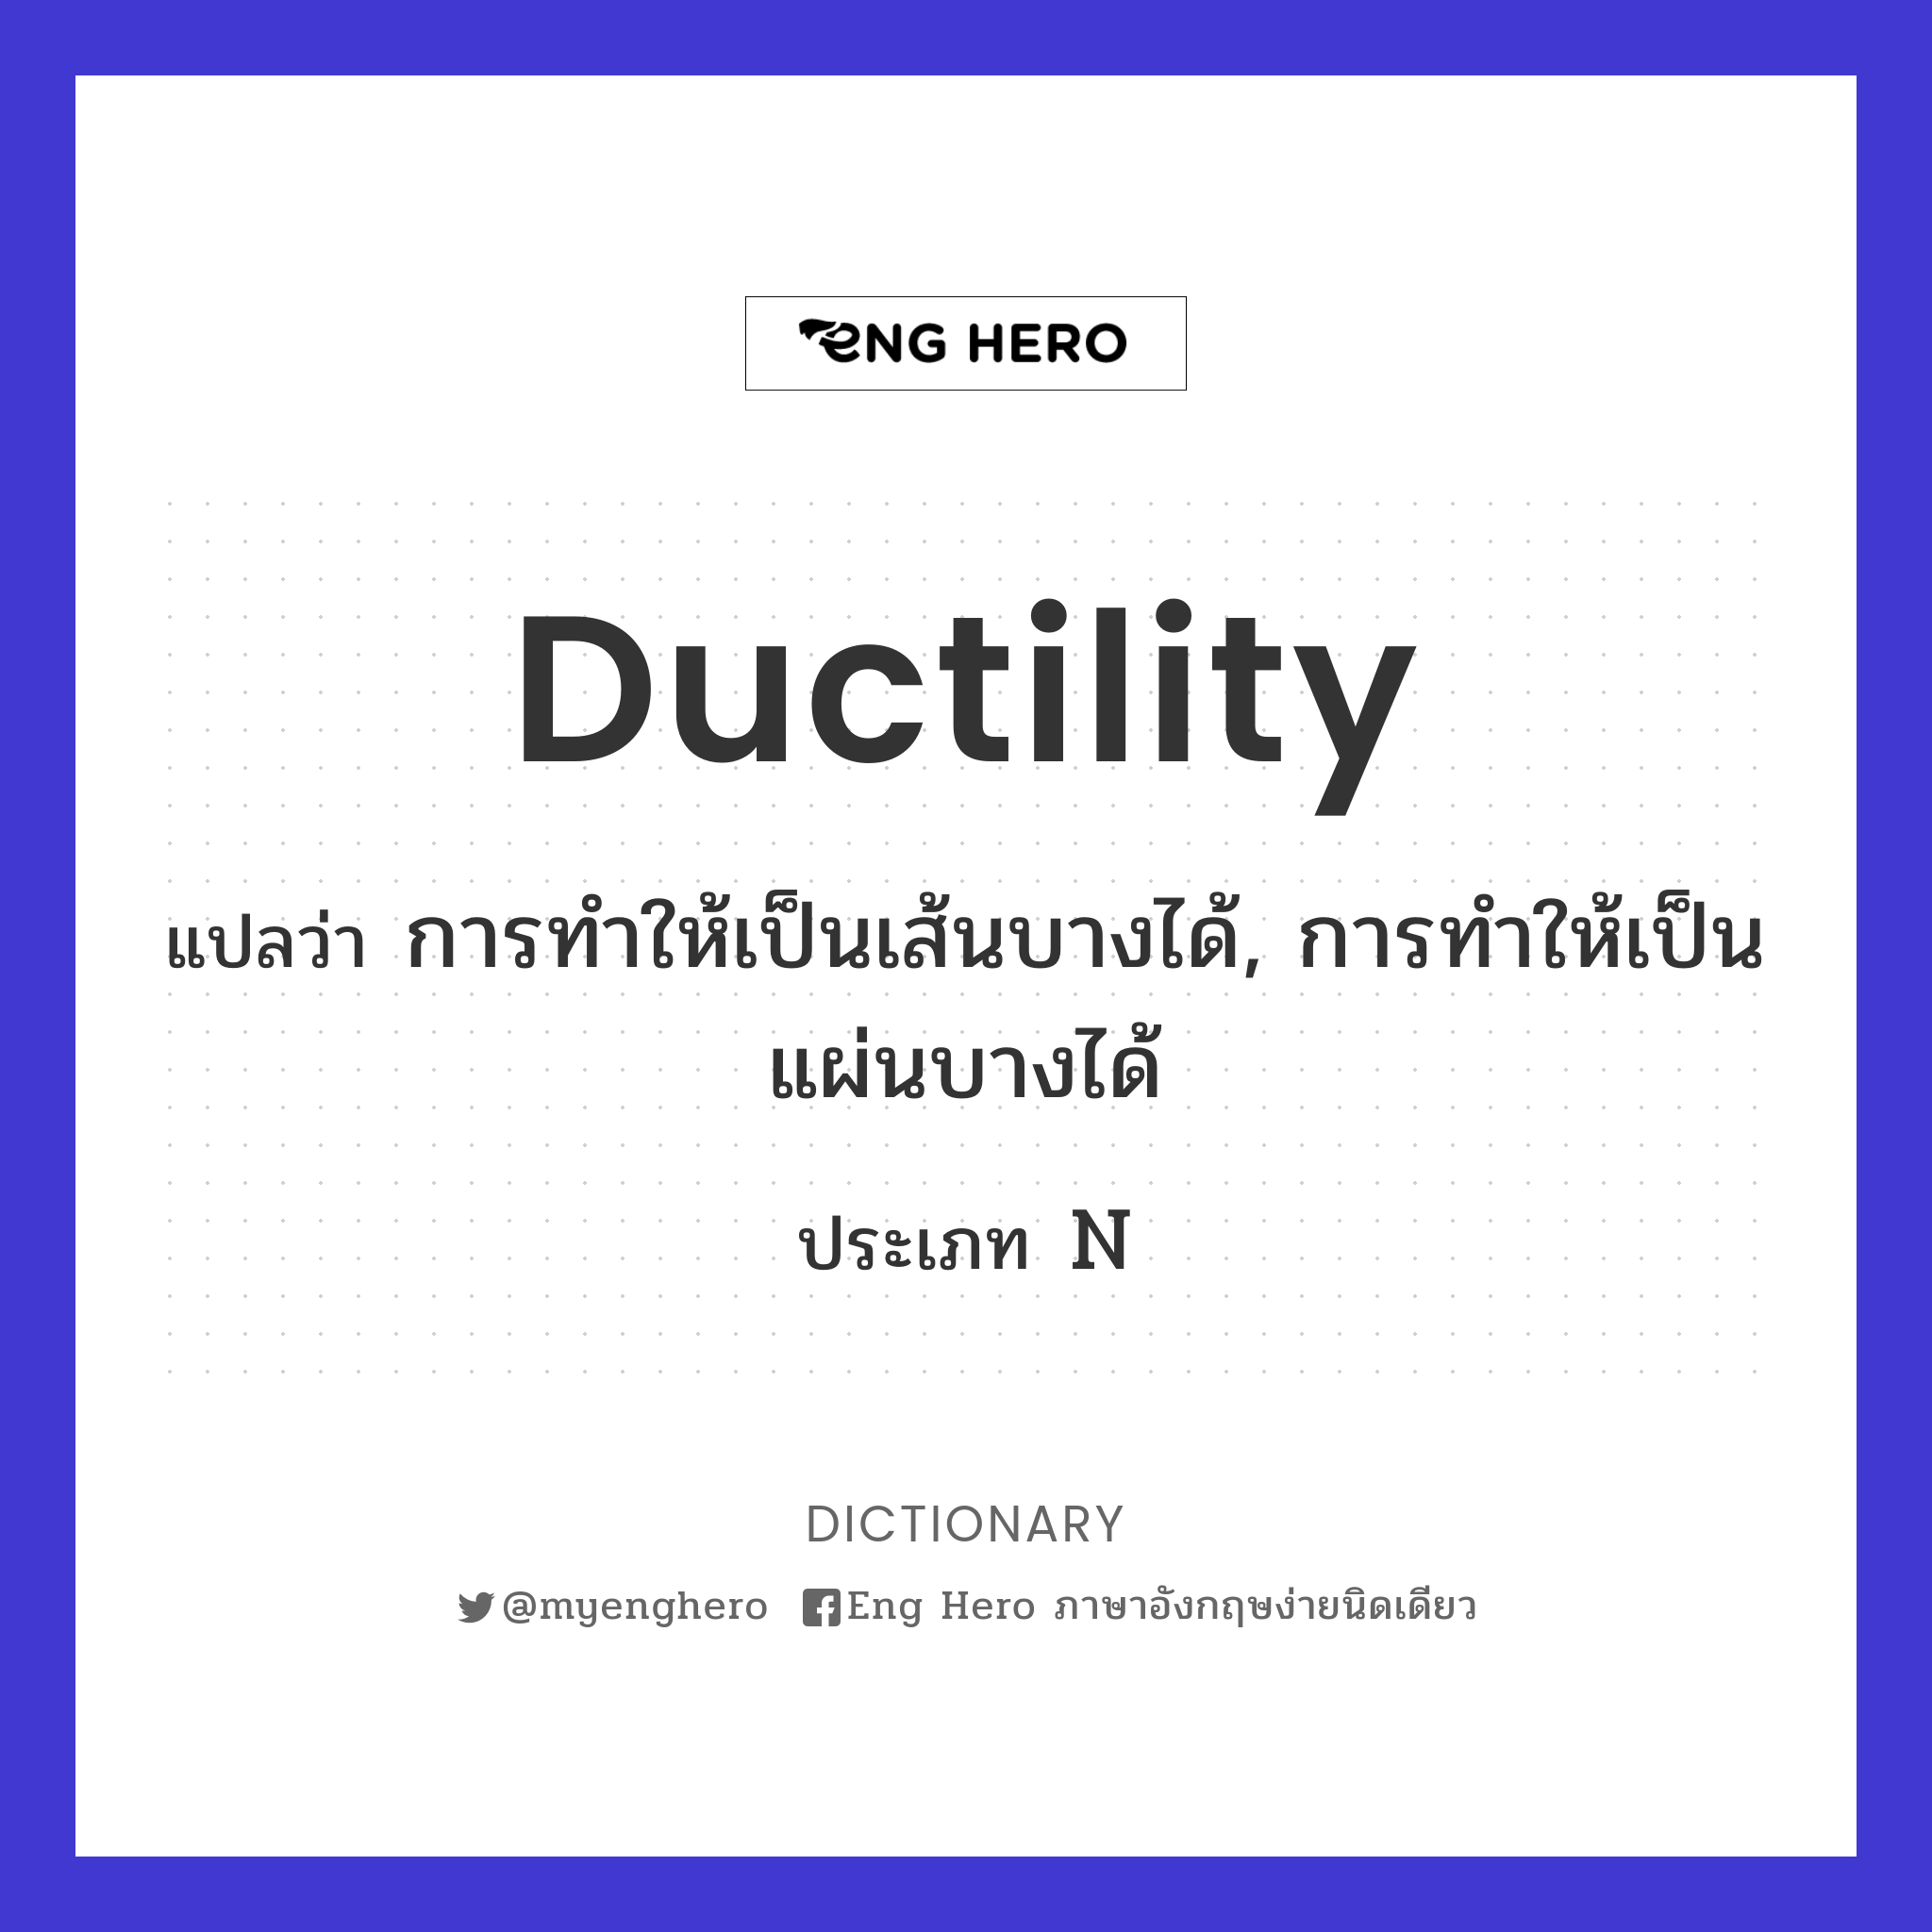 ductility